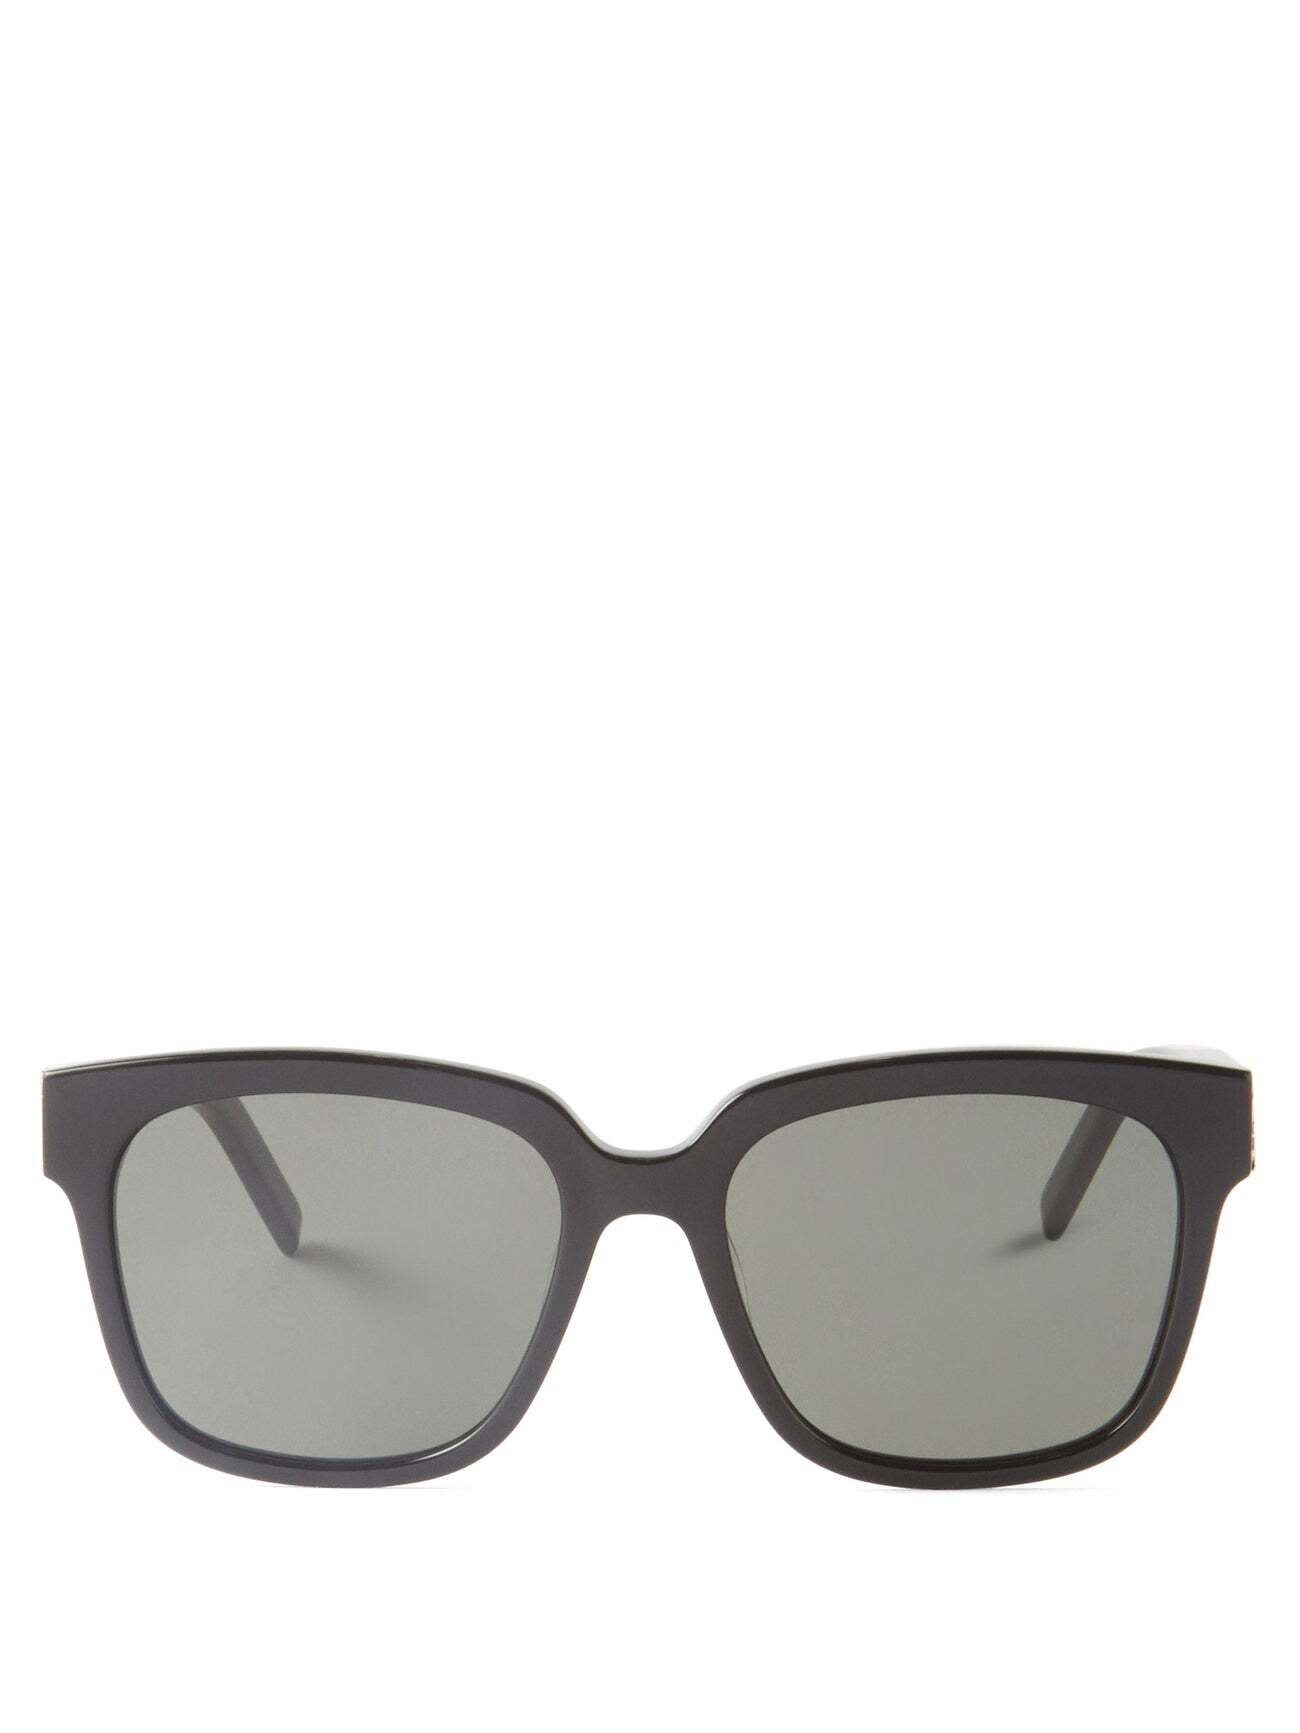 Saint Laurent - Monogram Square Acetate Sunglasses - Womens - Black